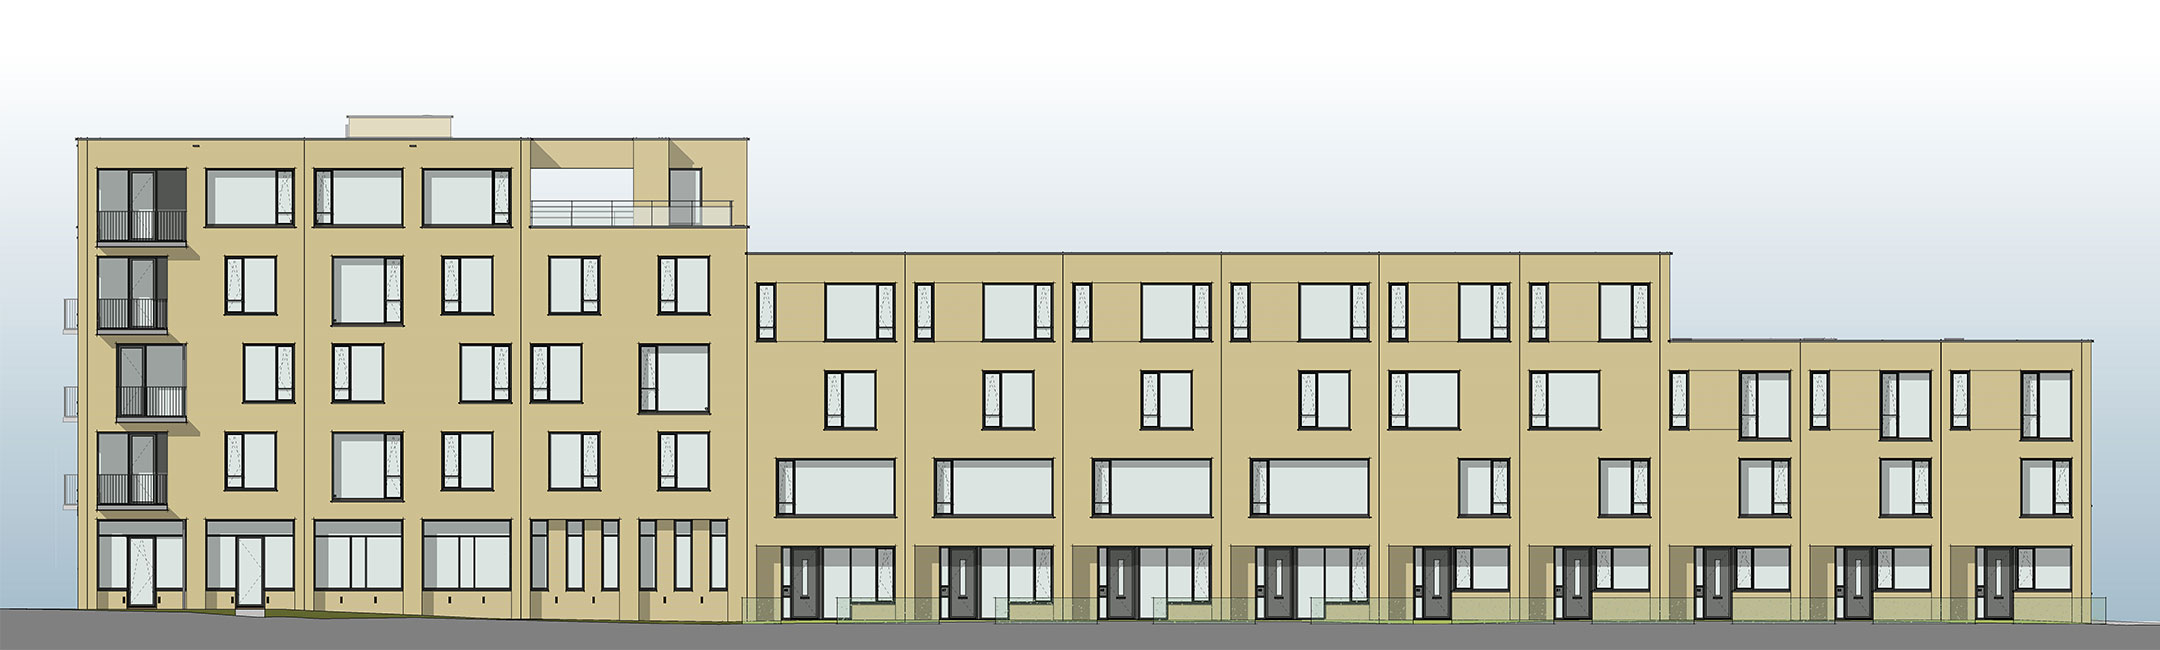 Haringlocatie Delft appartementencomplex BIM aanzicht gevel